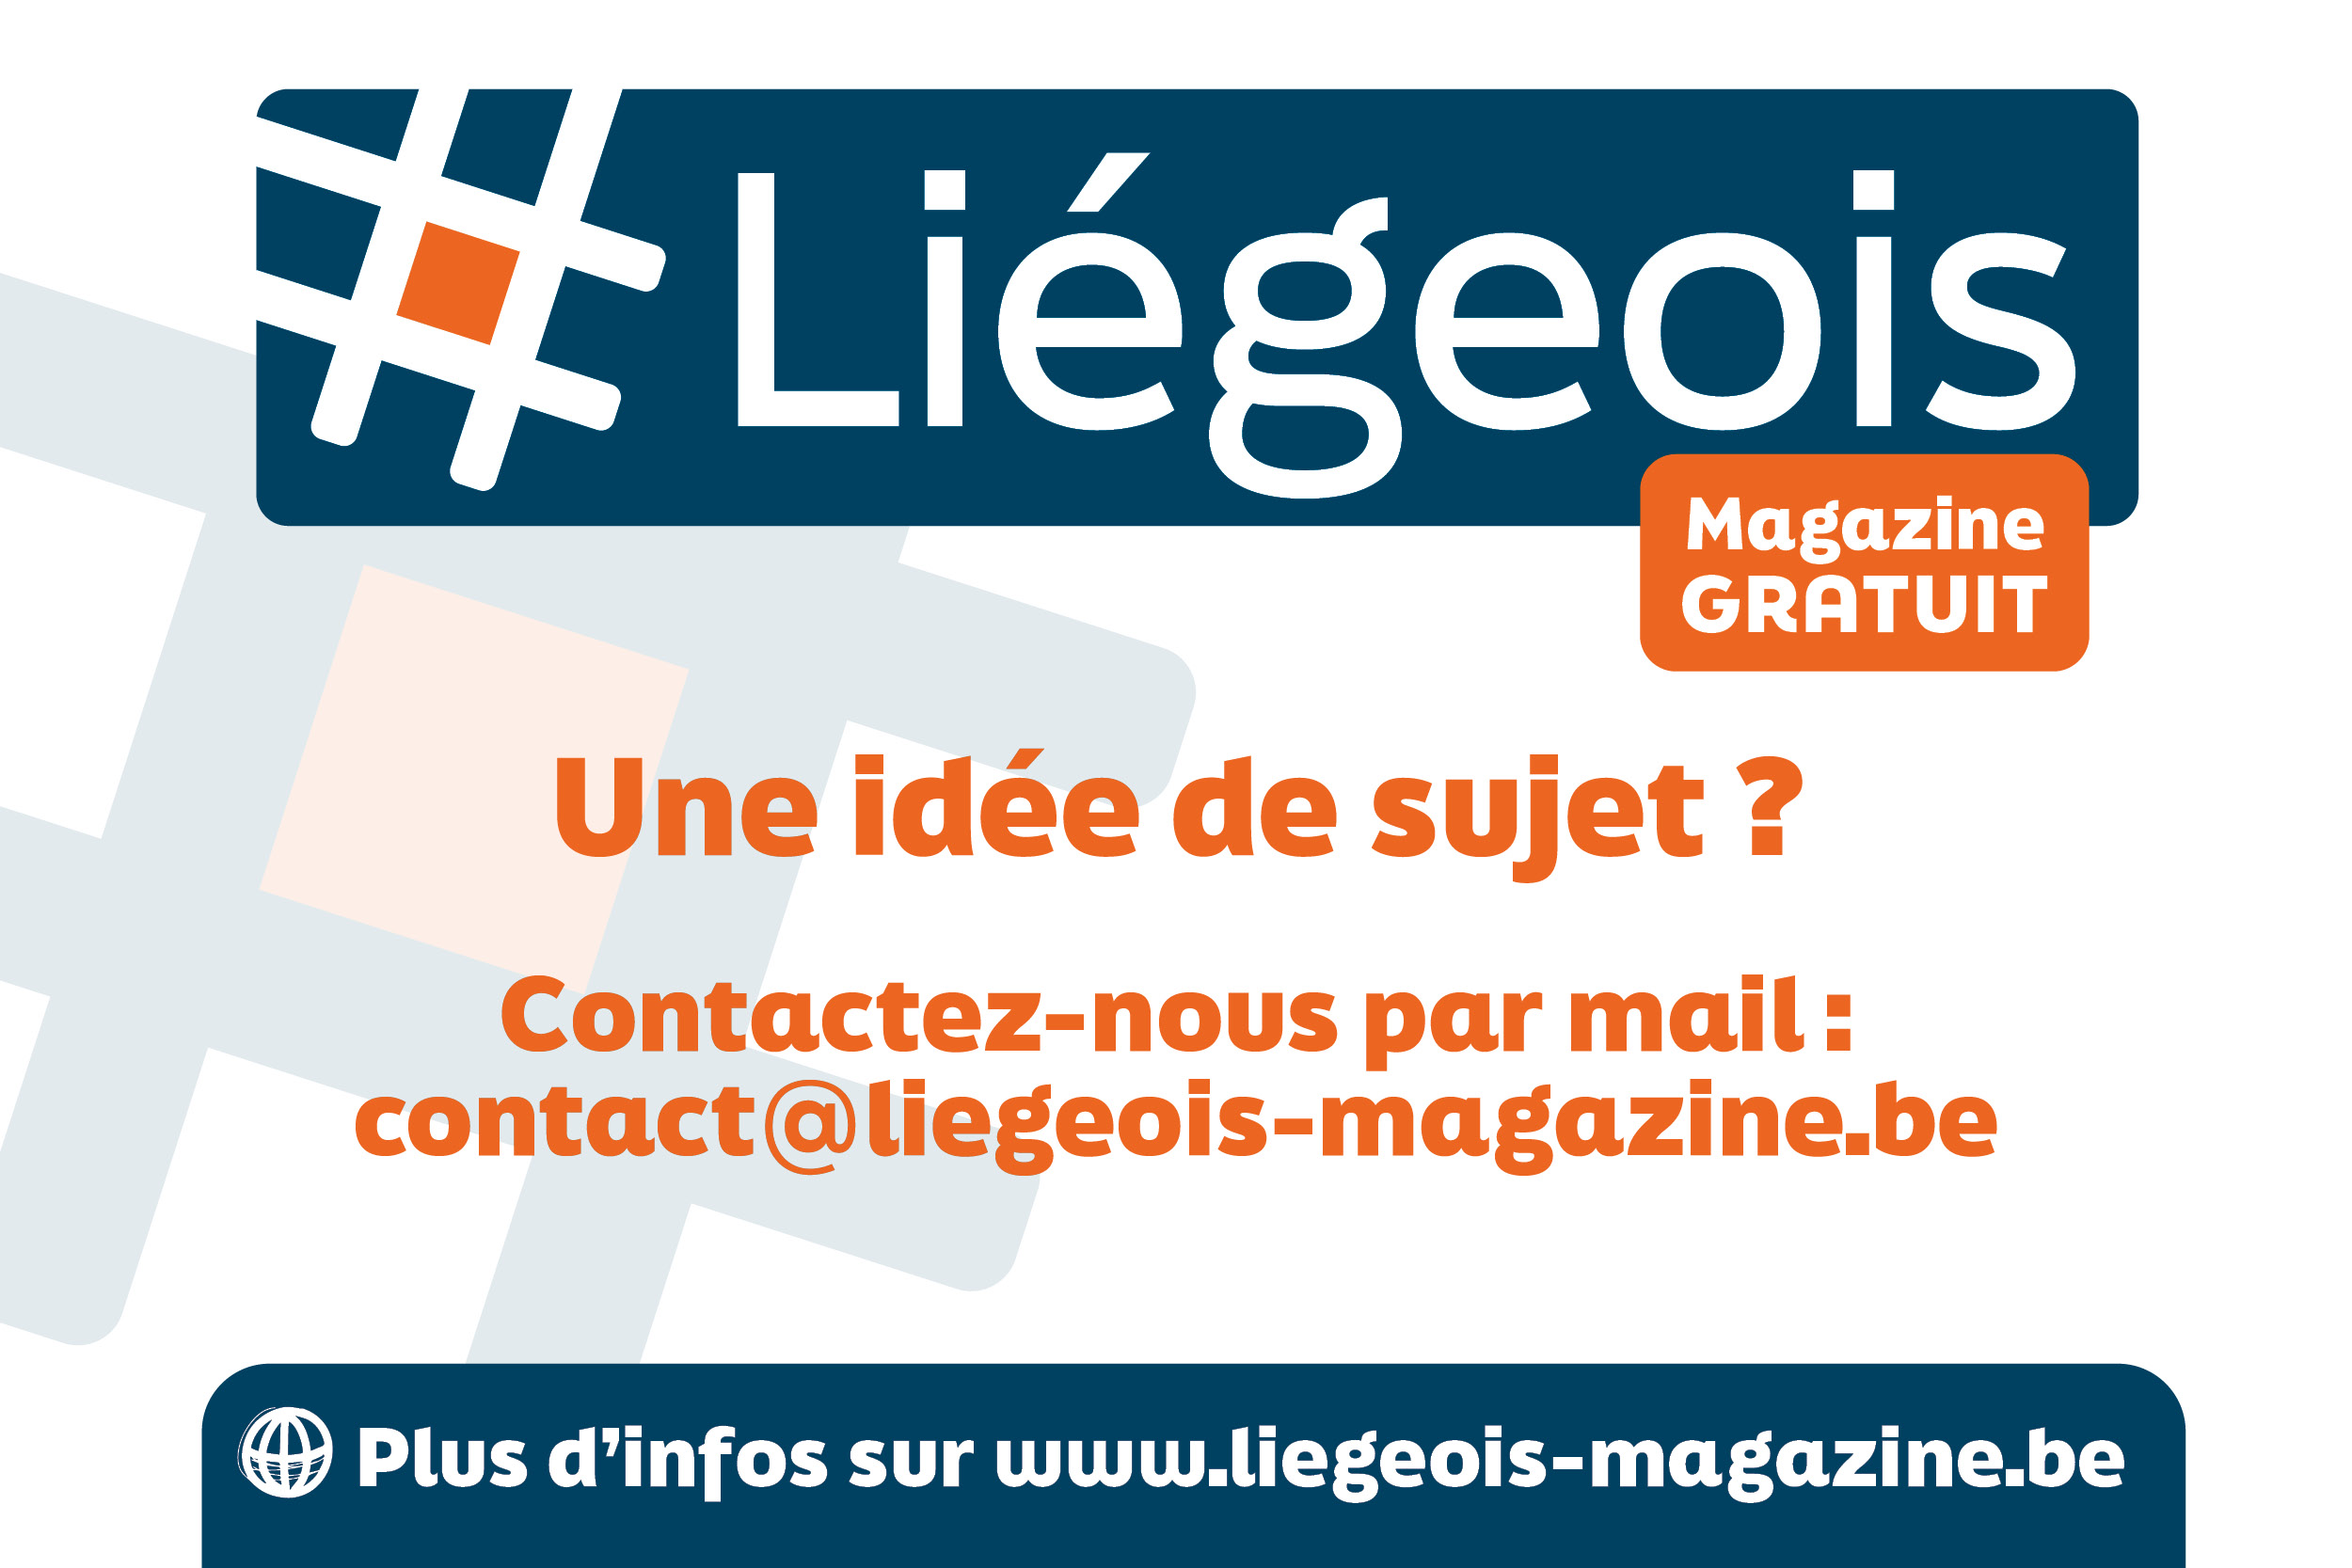 Soumettez un sujet pour le magazine #Liégeois